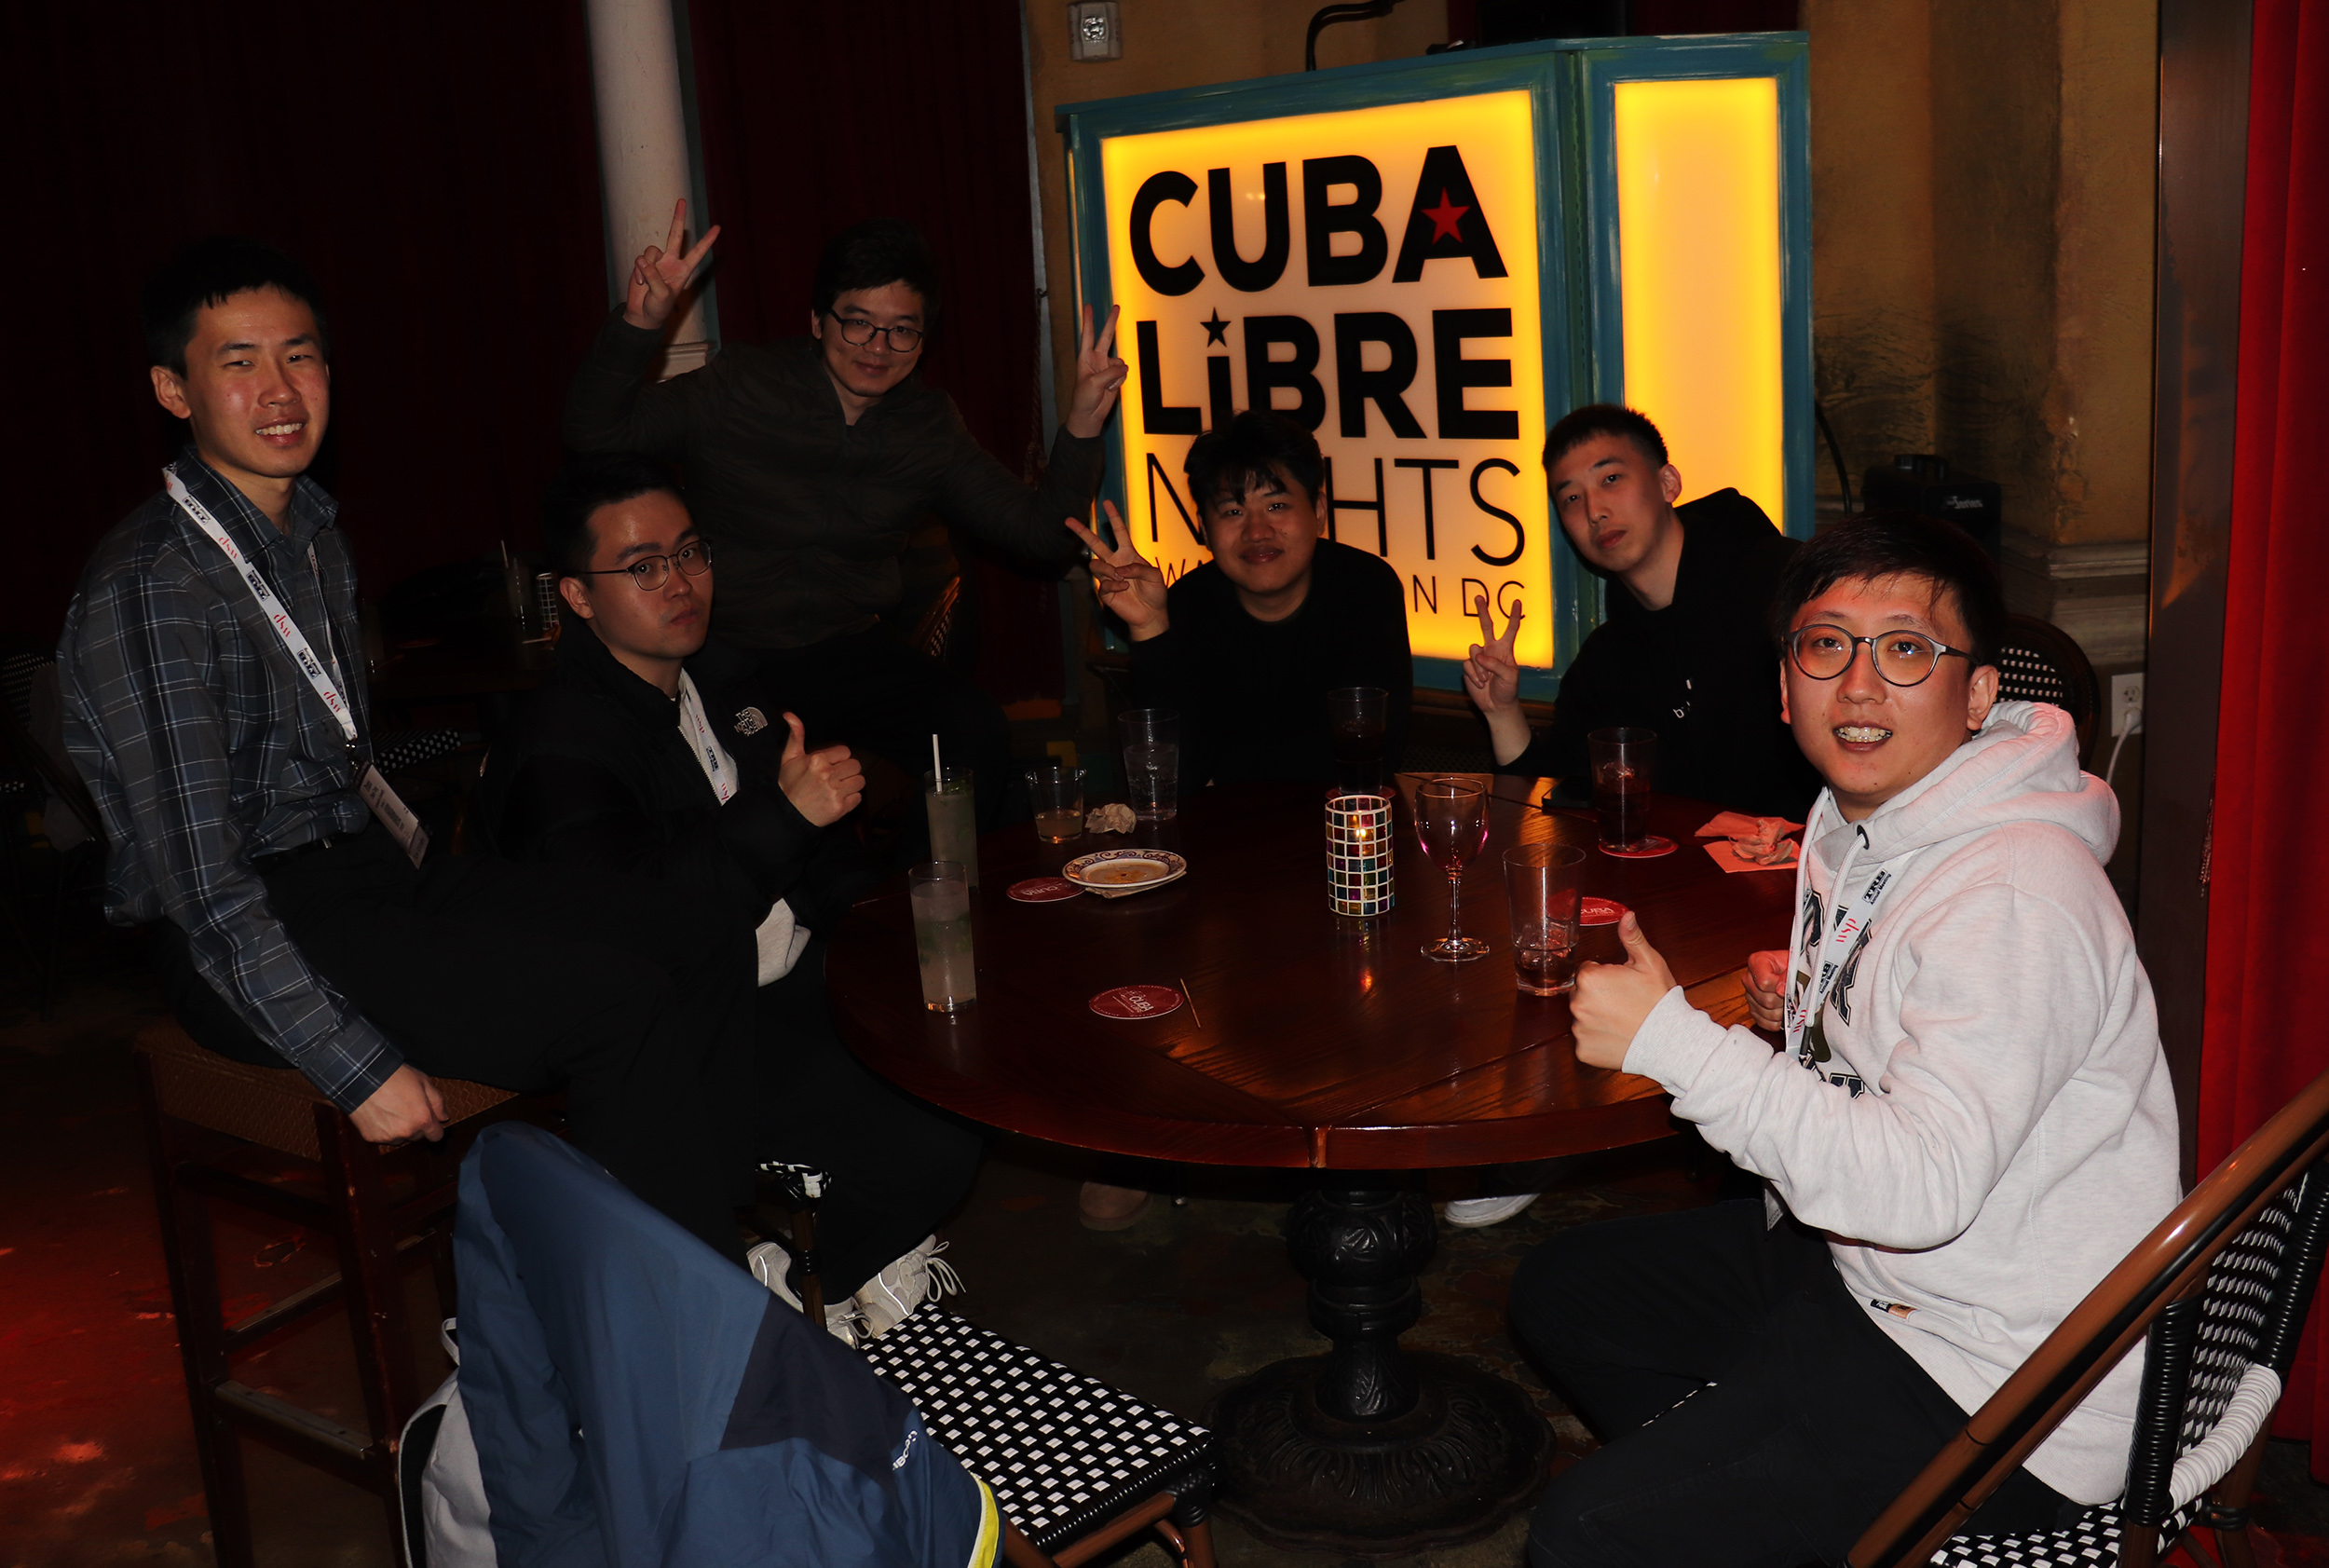 ITS Berkeley Reception at TRB, held at Cuba Libre